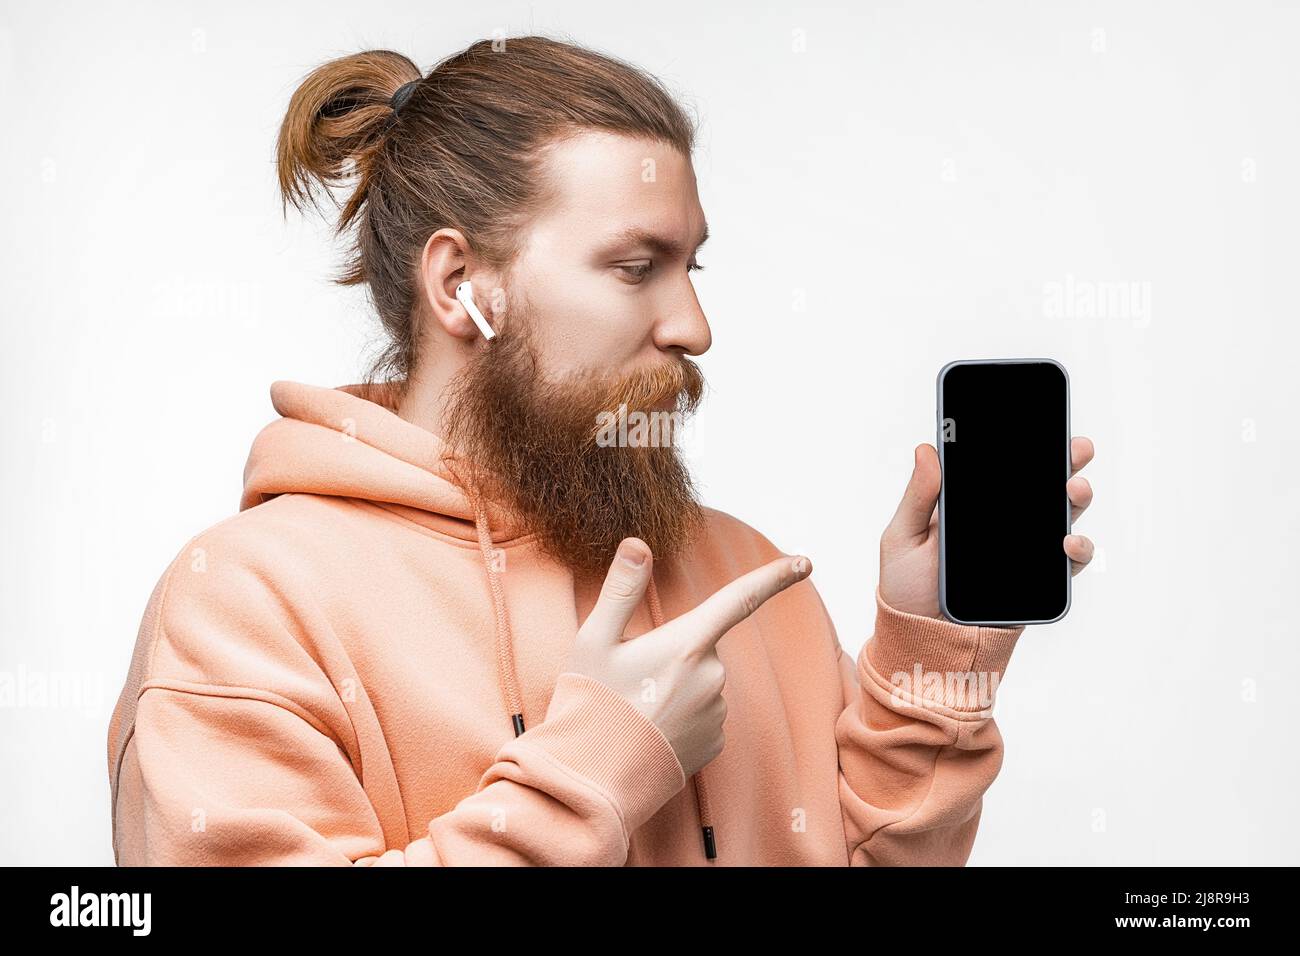 Scandinave beau homme sérieux tenant un téléphone et pointe vers l'écran noir maquette avec casque isolé sur fond gris. Un homme calme avec du gingembre Banque D'Images